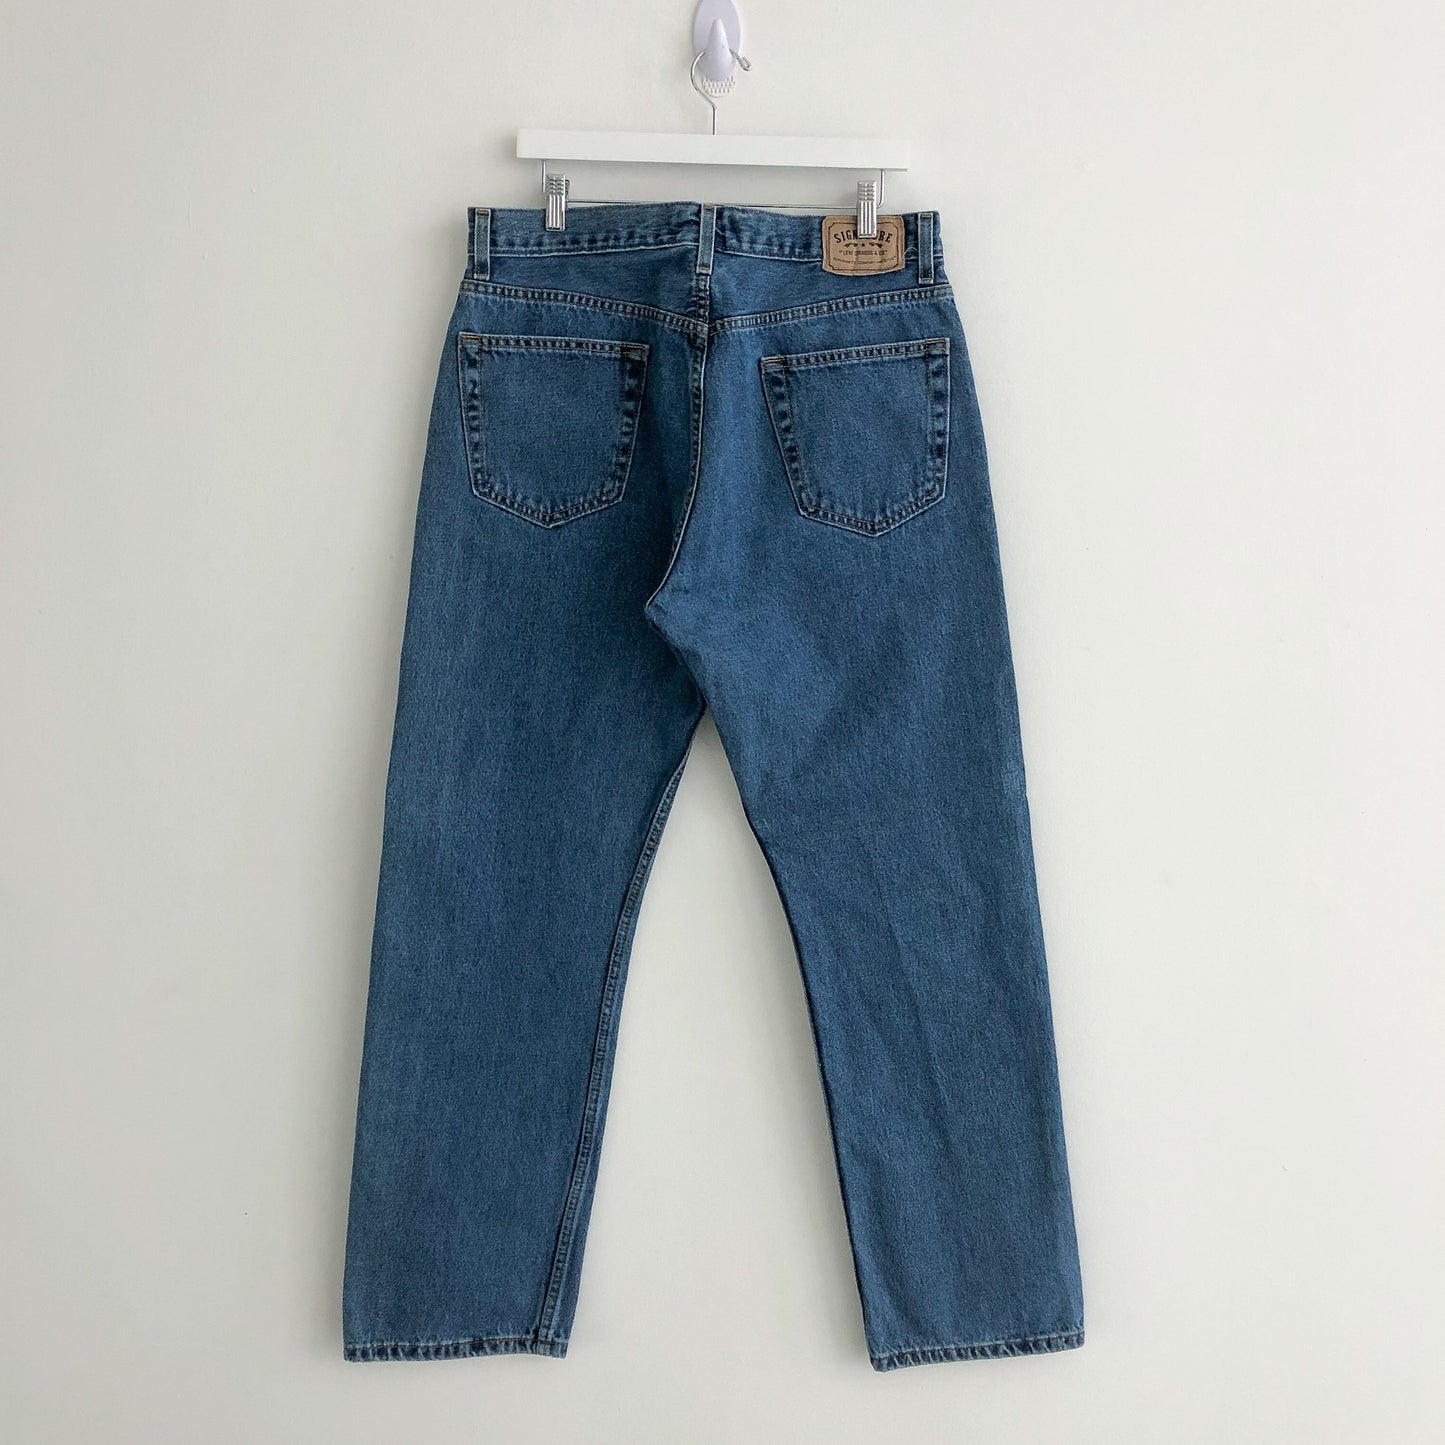 Levi’s Signature Medium Wash Denim Jeans